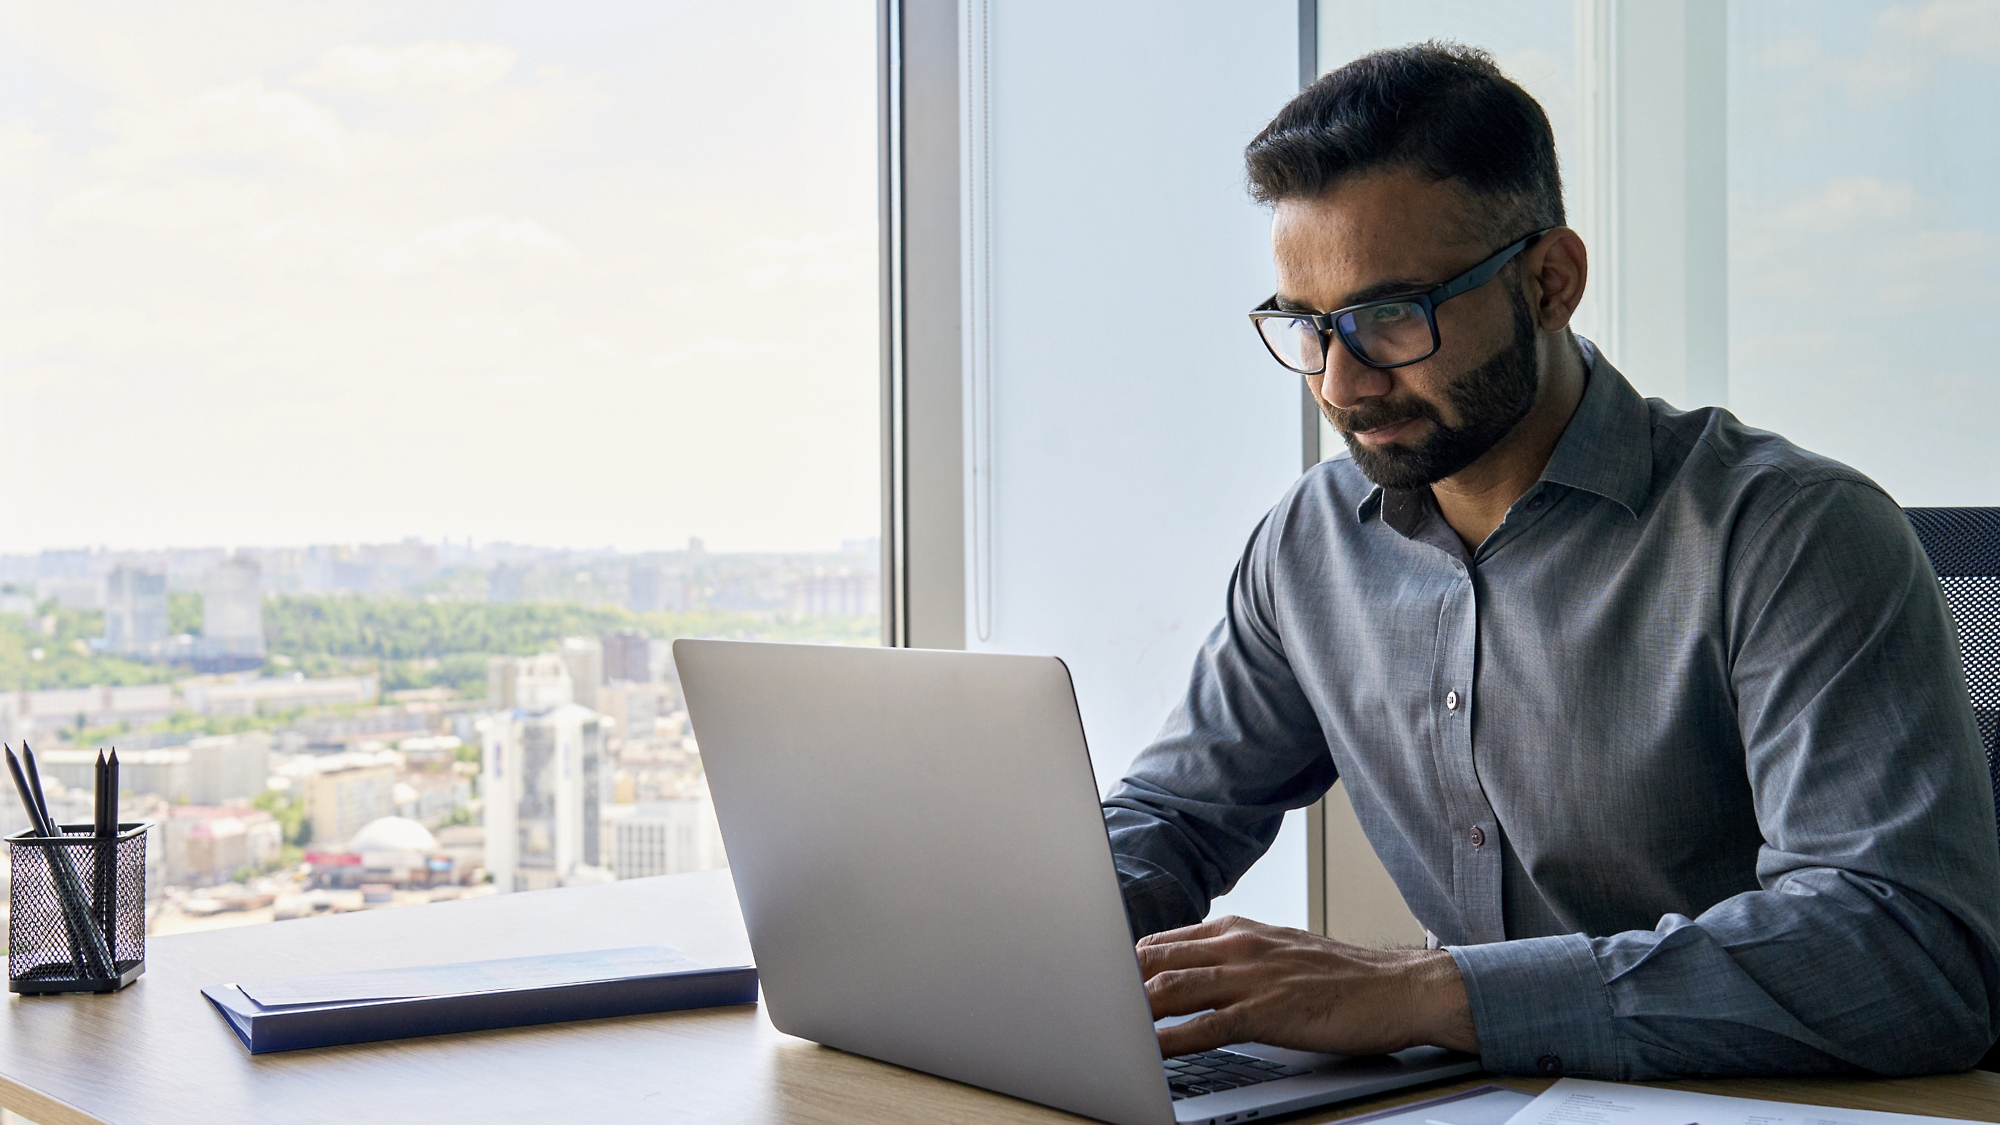 Un homme portant des lunettes travaille intensément sur un ordinateur portable à un bureau à côté d’une fenêtre qui donne sur un paysage urbain.